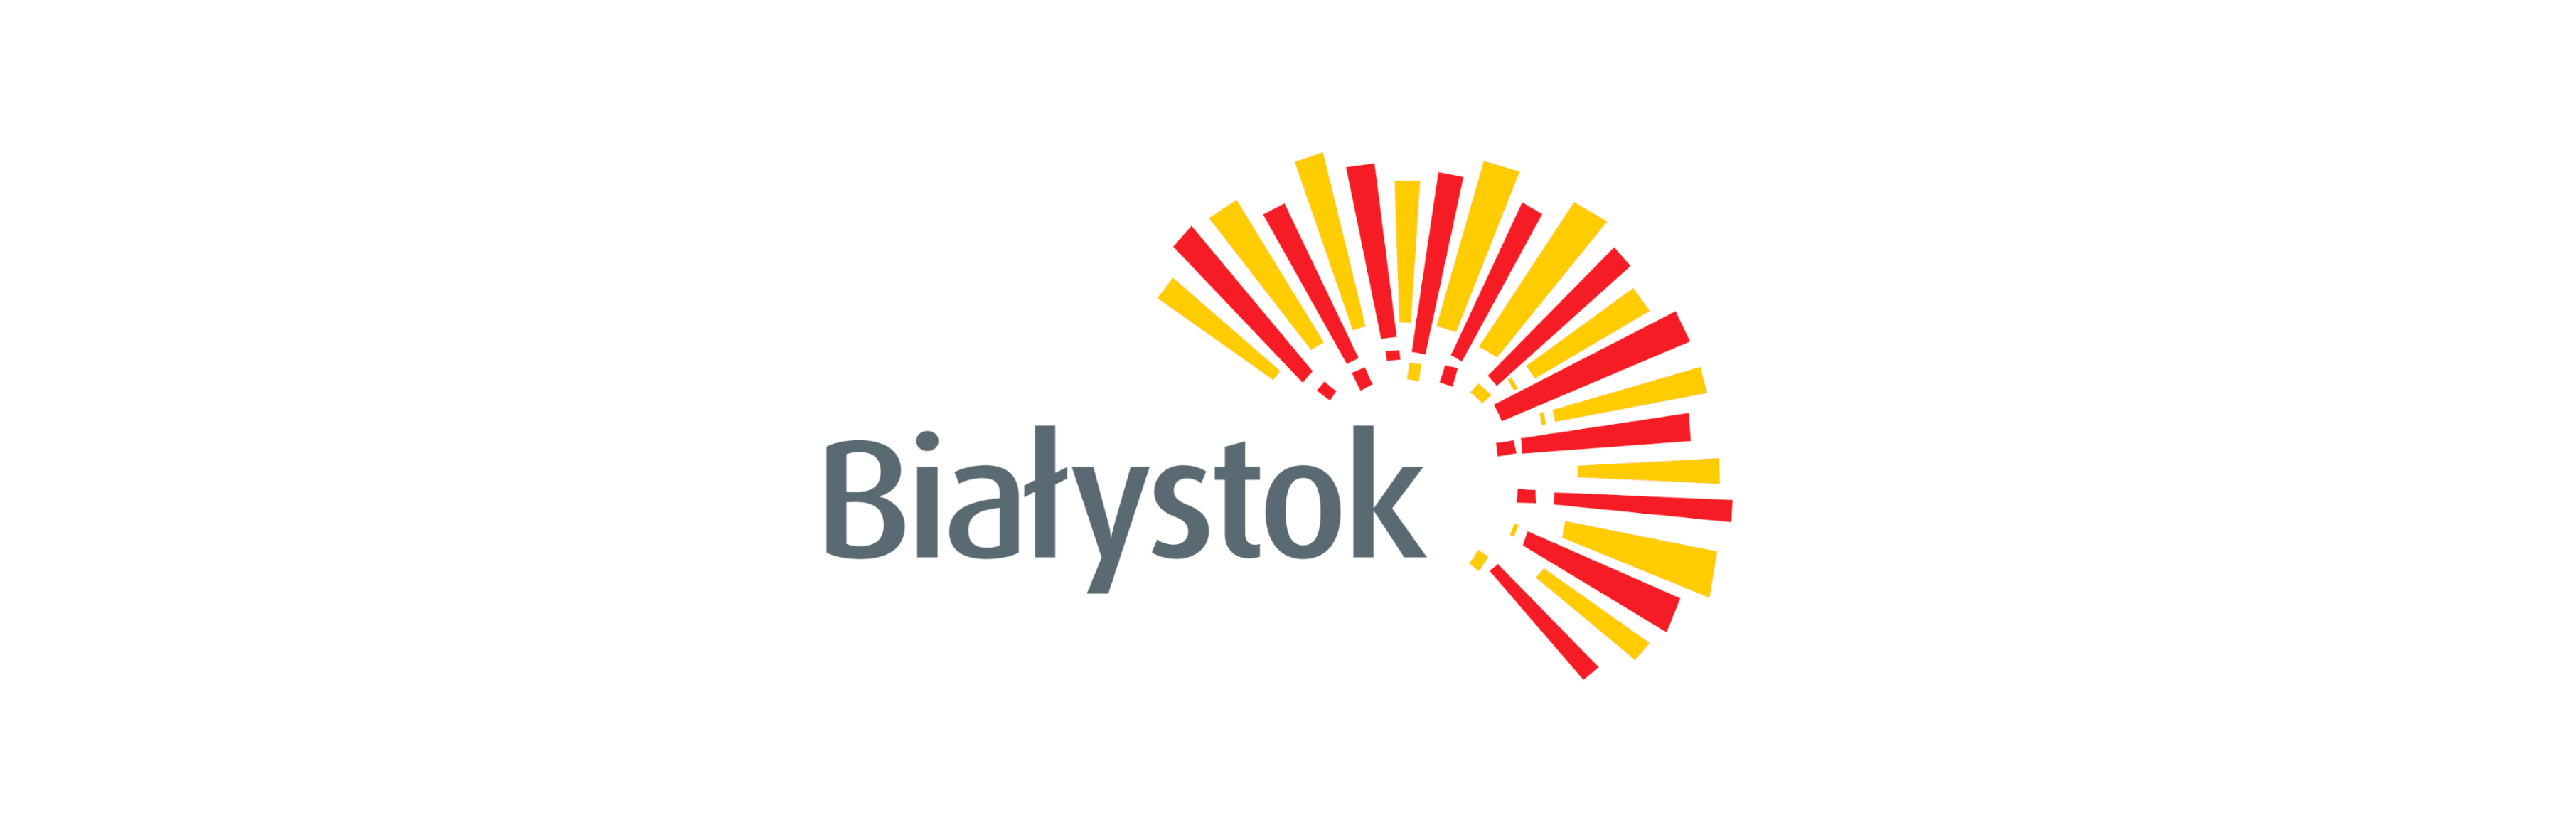 Miasto Białystok